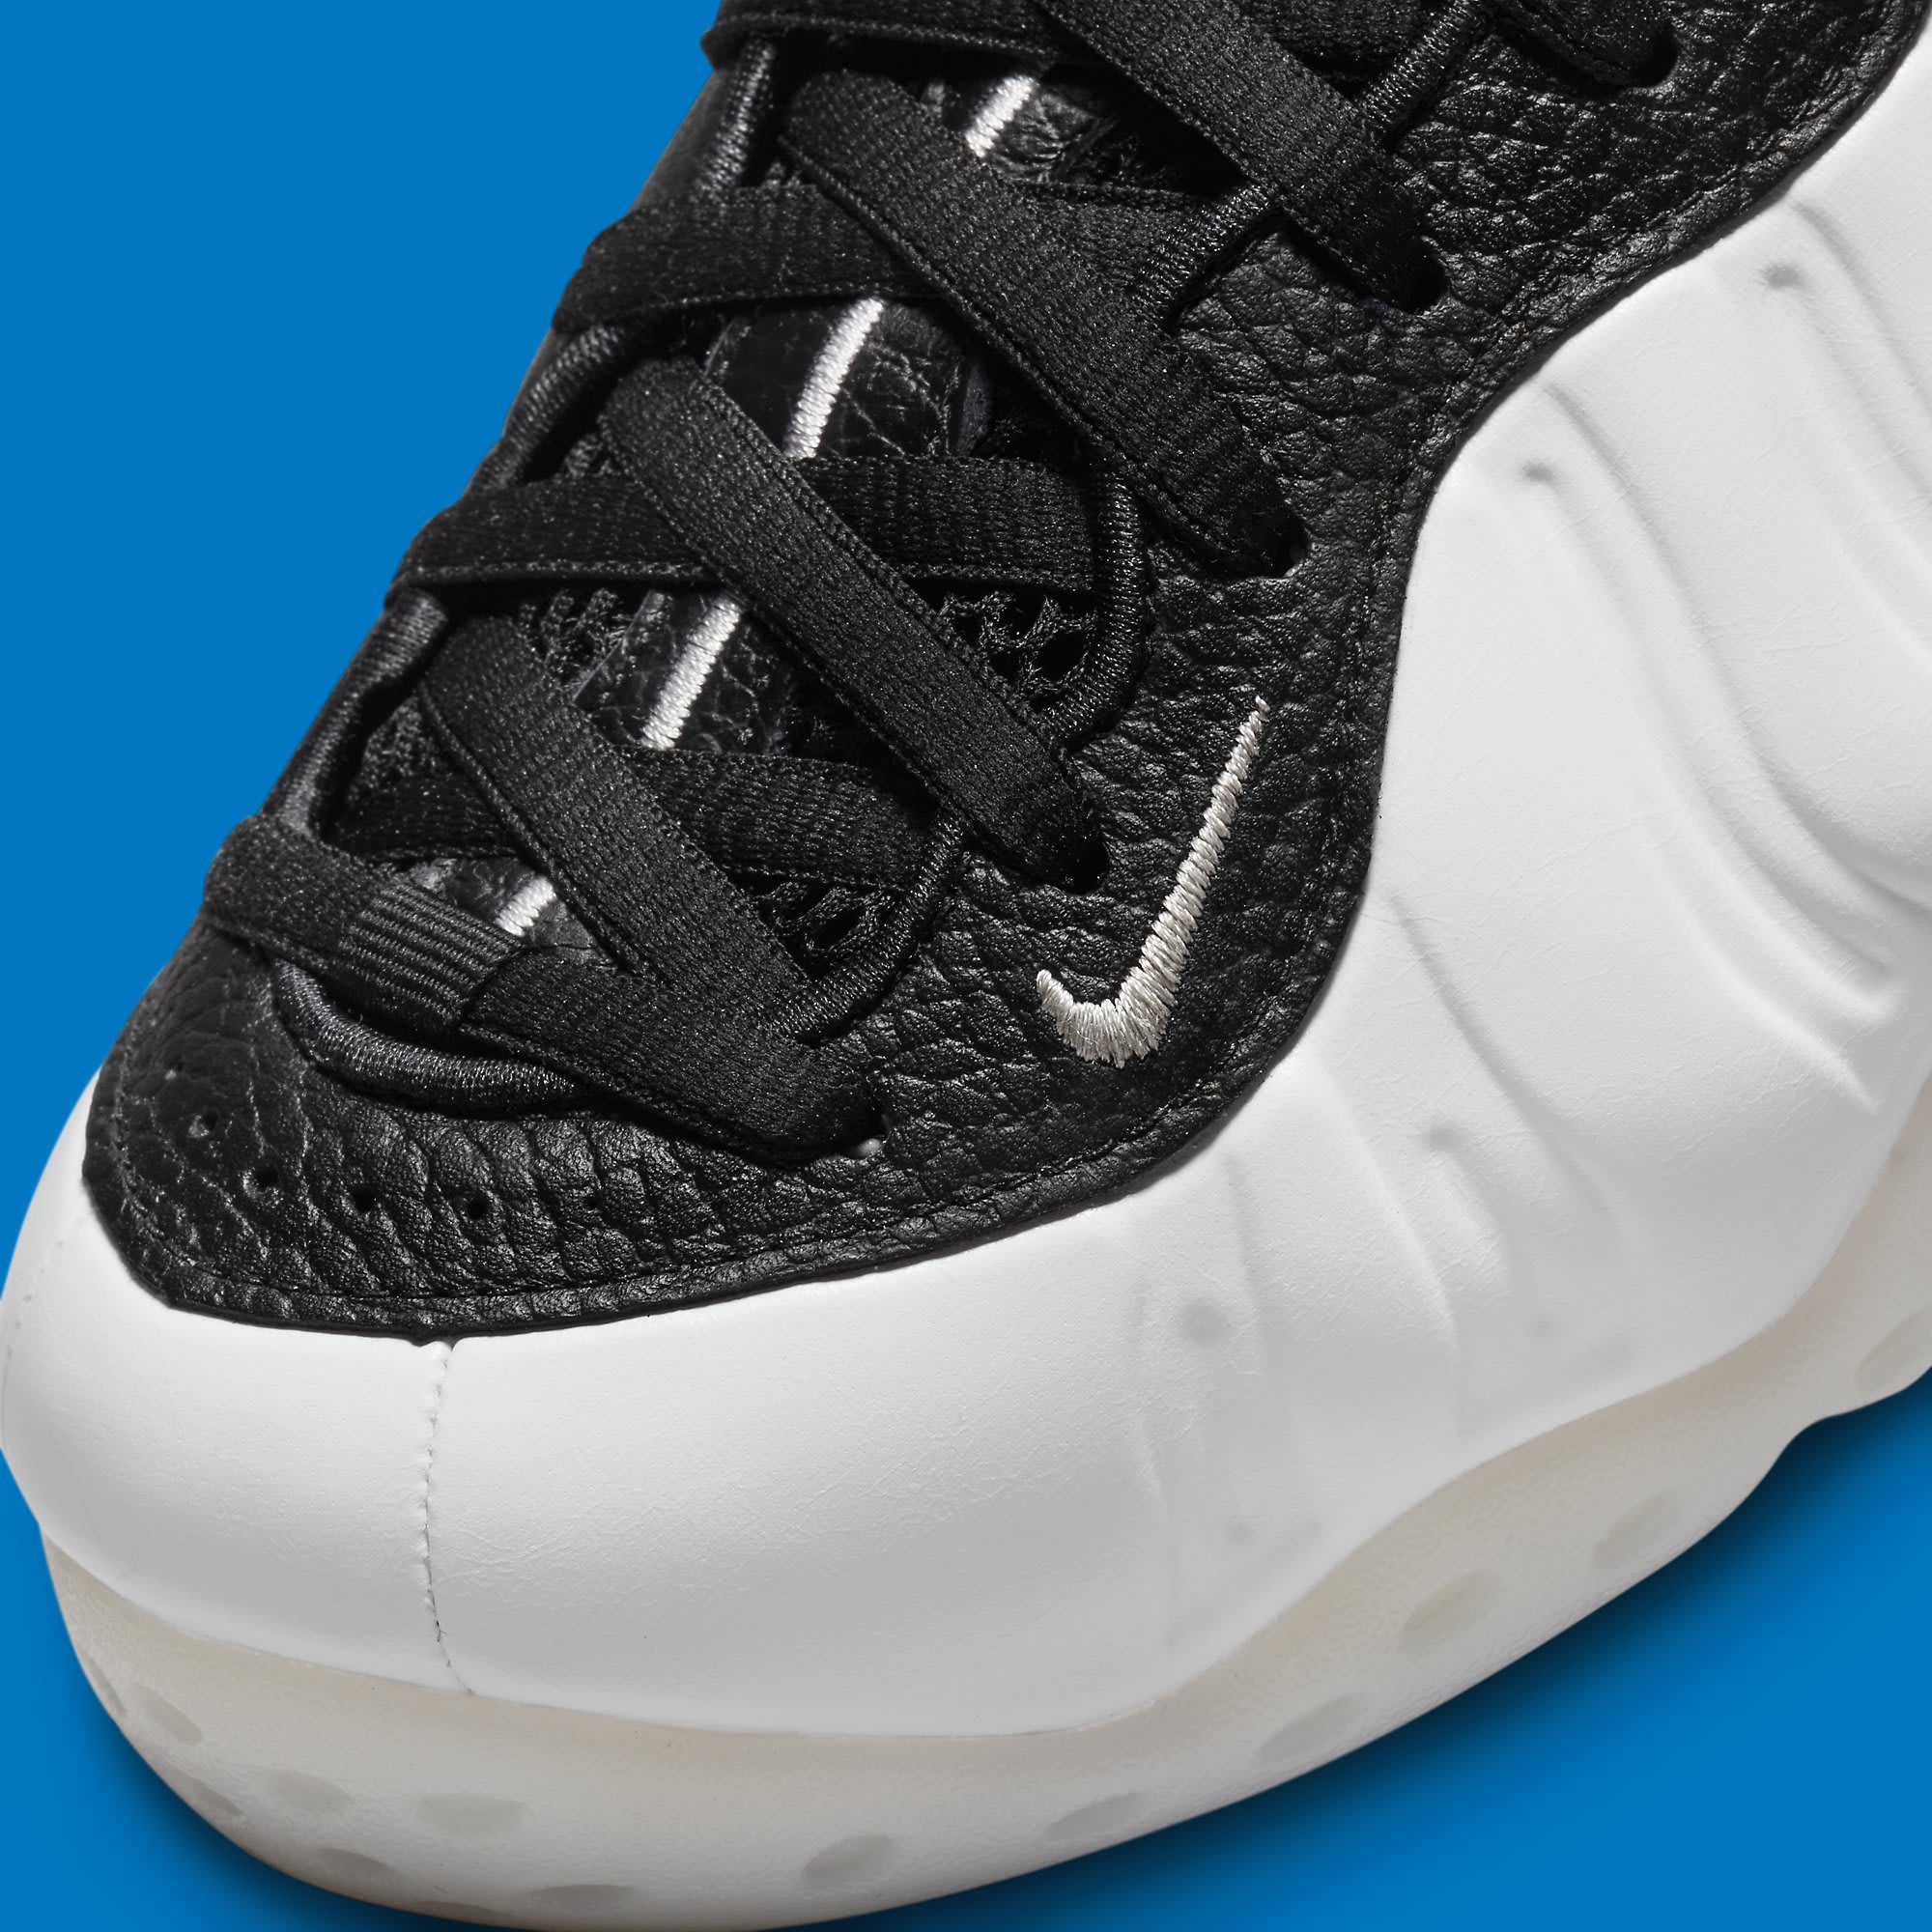 Nike Air Foamposite One White Penny Hardaway PE Release Date DV0815-100 Toe Detail